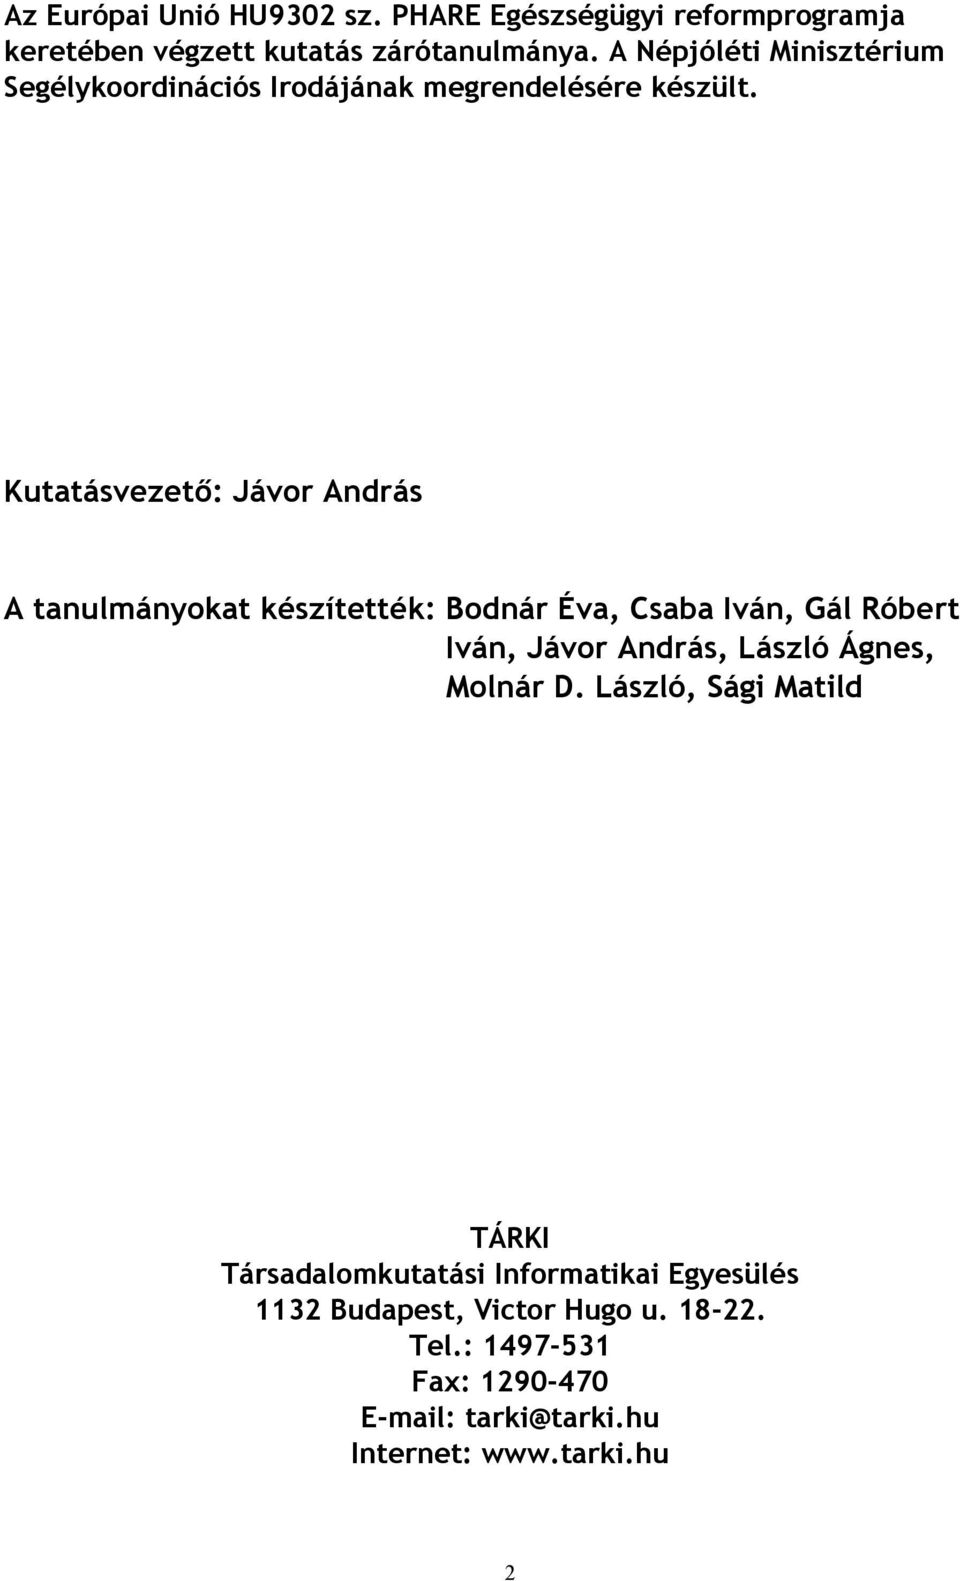 Kutatásvezető: Jávor András A tanulmányokat készítették: Bodnár Éva, Csaba Iván, Gál Róbert Iván, Jávor András, László